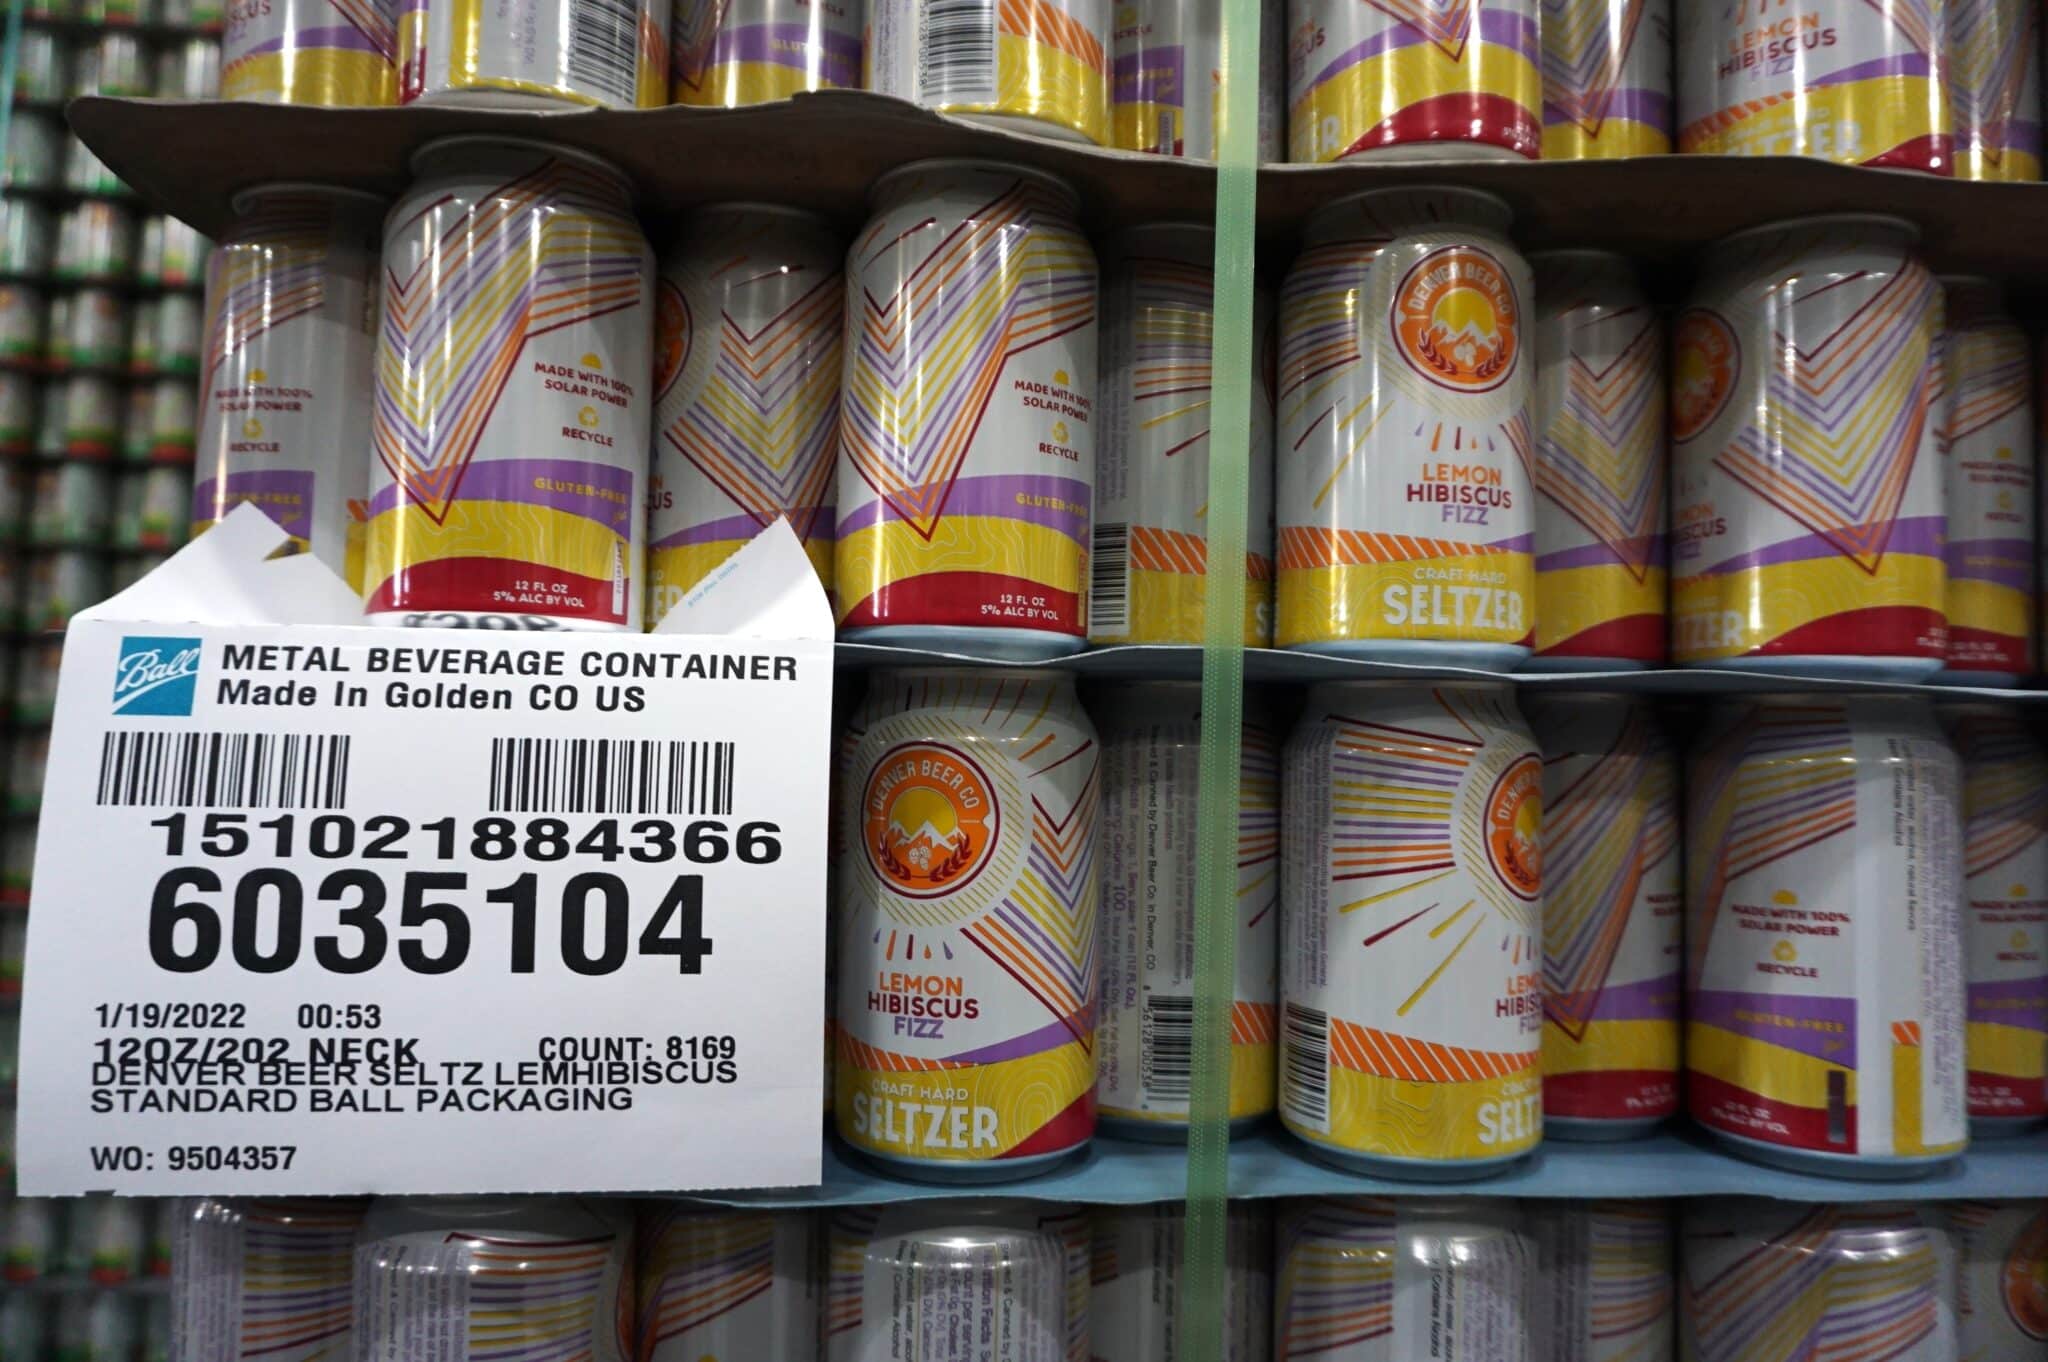 Denver Beer cans scaled